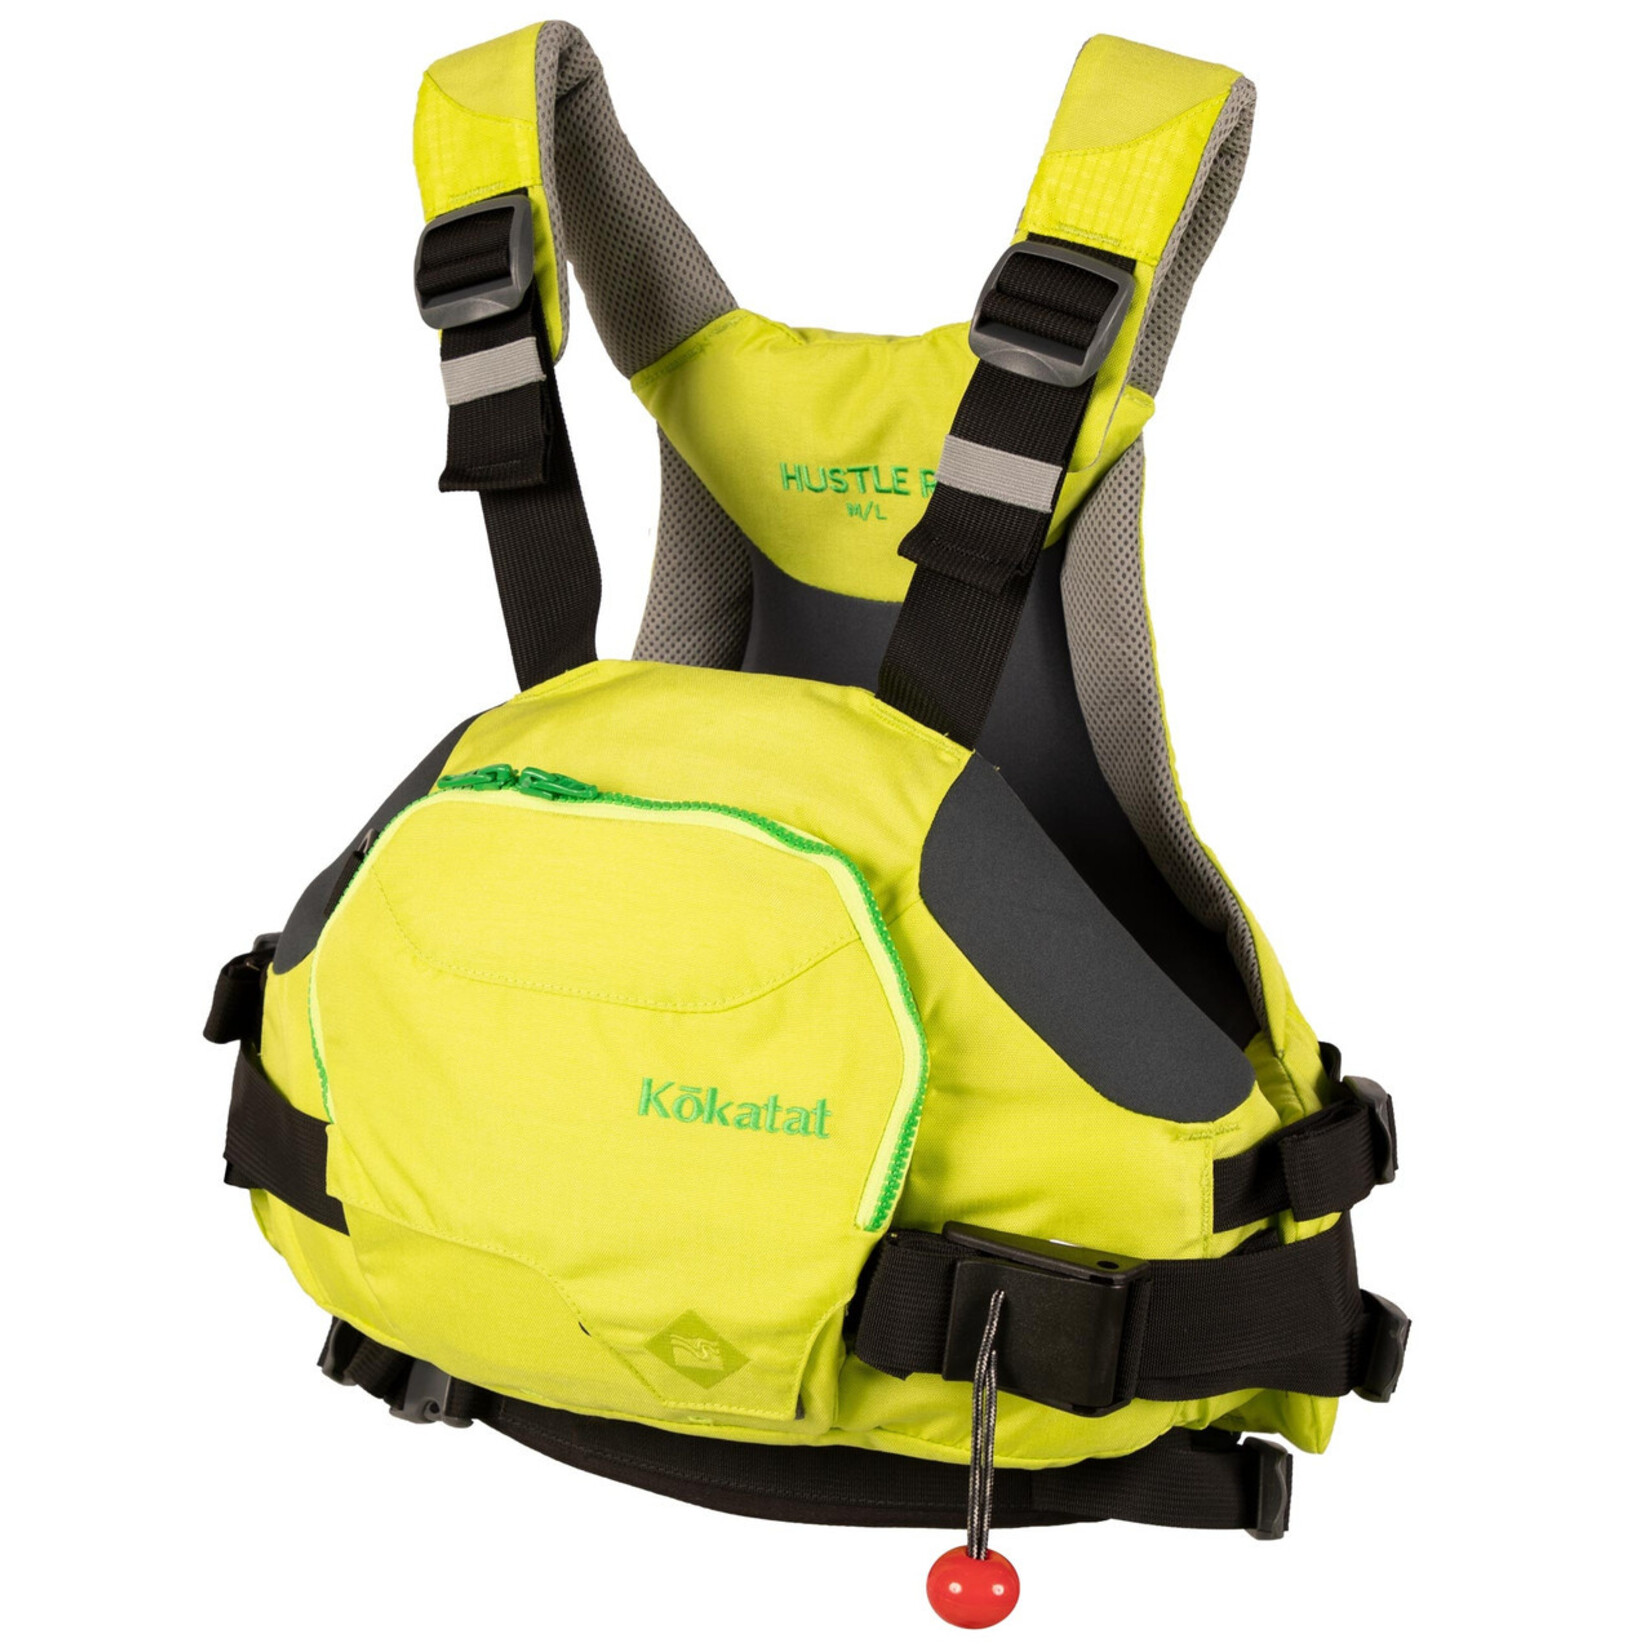 Kokatat - HustleR Rescue Vest